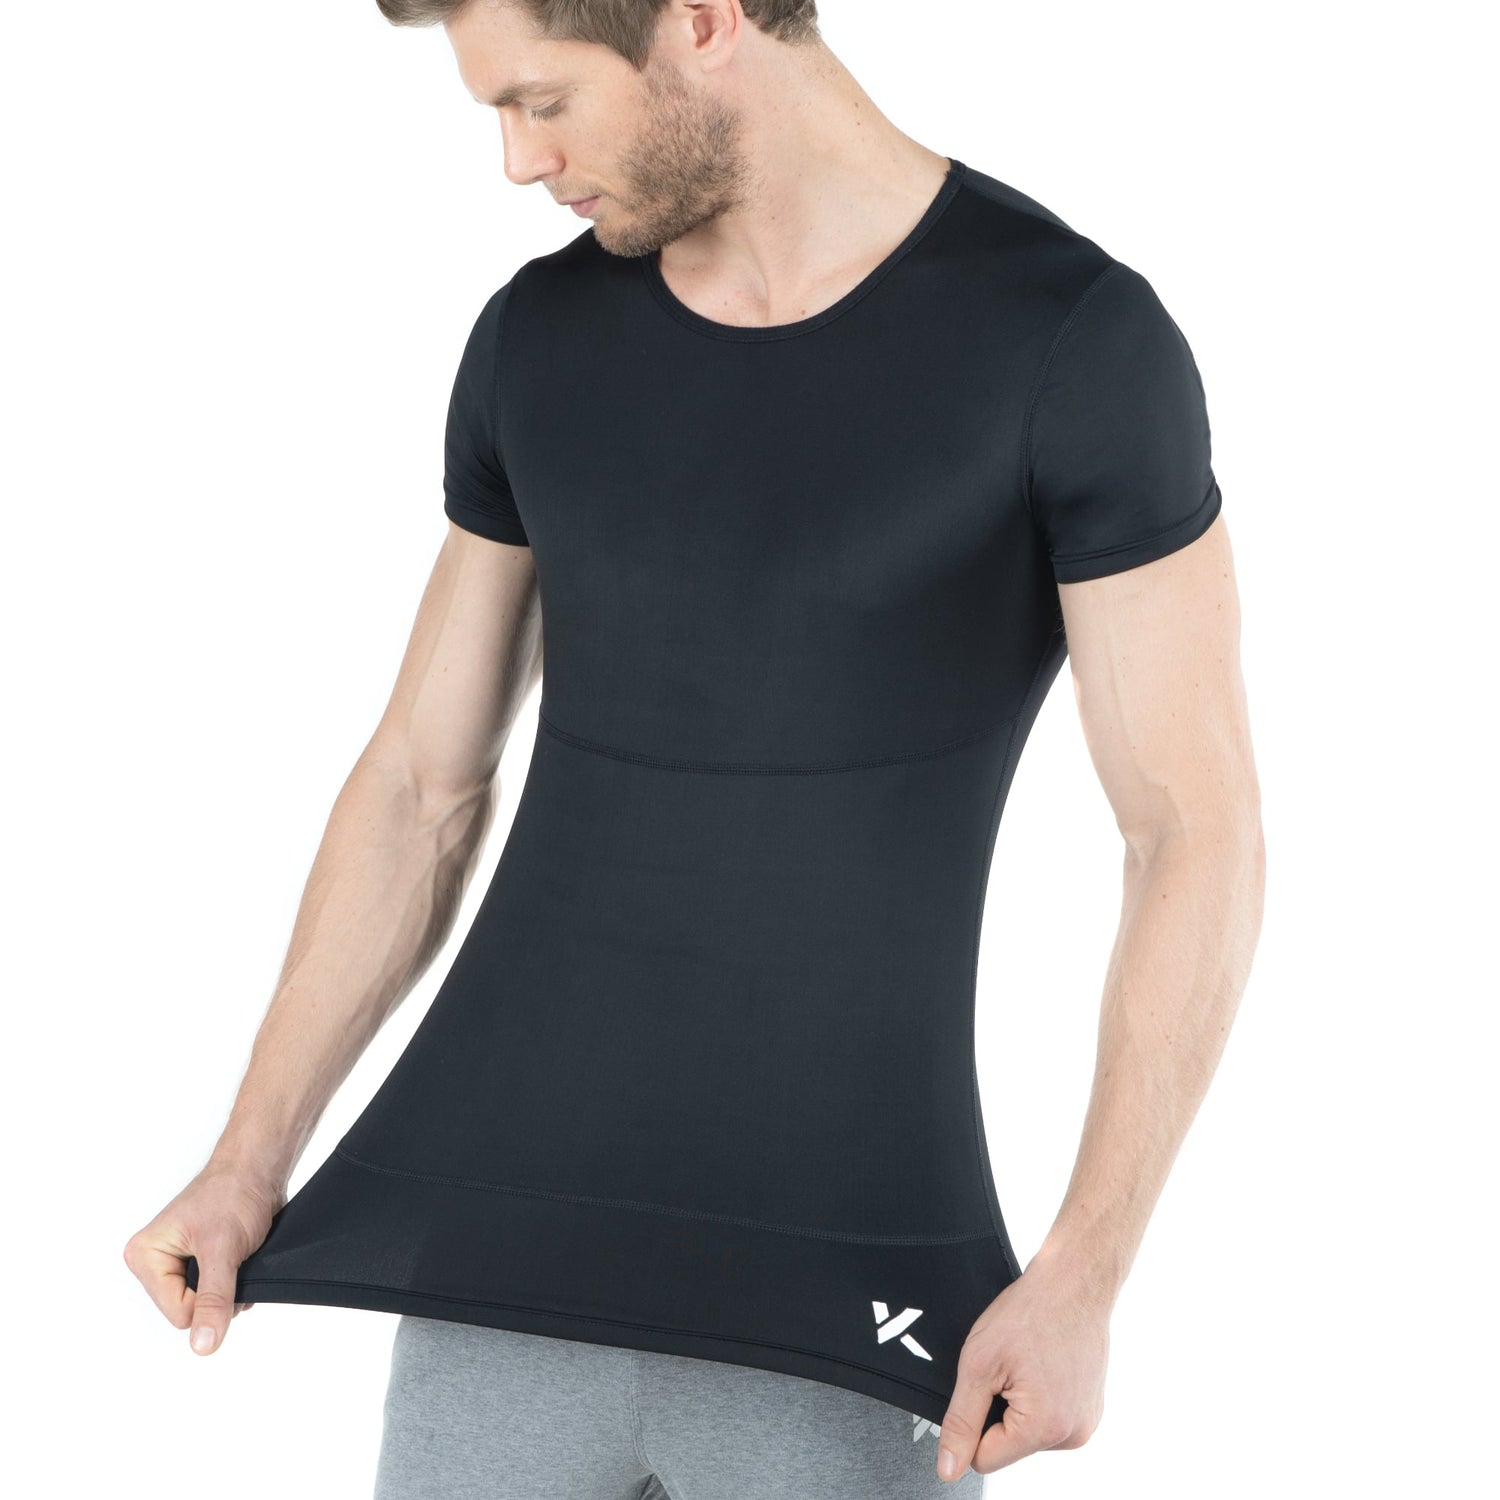 Sleek Upper Arm Shaper and Back Bulge Smoother Compression Vest